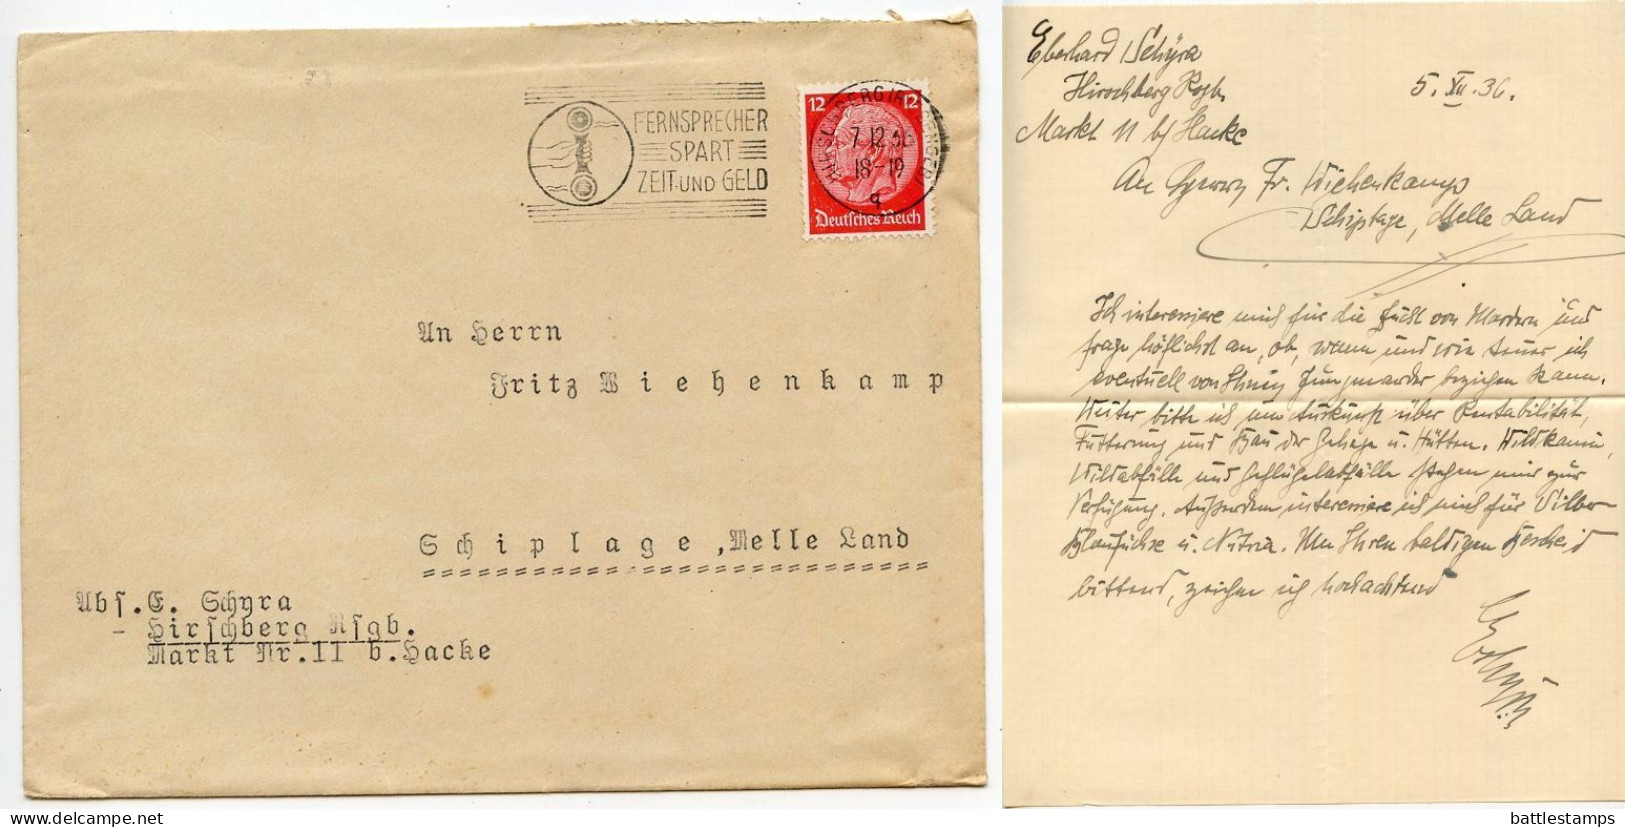 Germany 1936 Cover & Letter; Hirschberg (Riesengeb) To Schiplage; 12pf. Hindenburg; Telephone Slogan Cancel - Brieven En Documenten